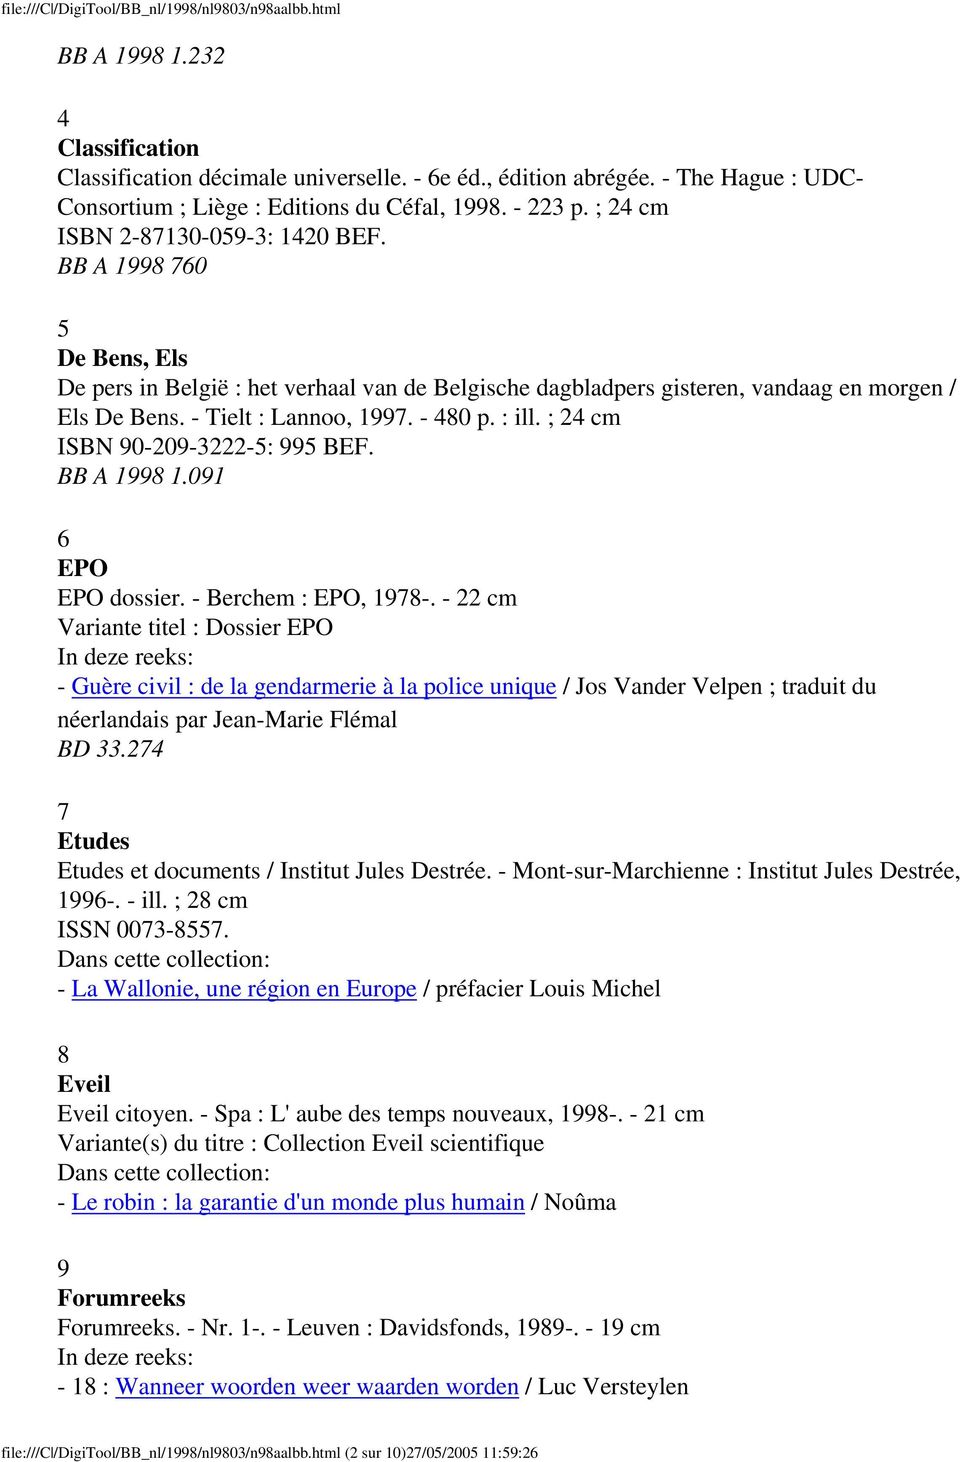 BB A 1998 760 5 De Bens, Els De pers in België : het verhaal van de Belgische dagbladpers gisteren, vandaag en morgen / Els De Bens. - Tielt : Lannoo, 1997. - 480 p. : ill.